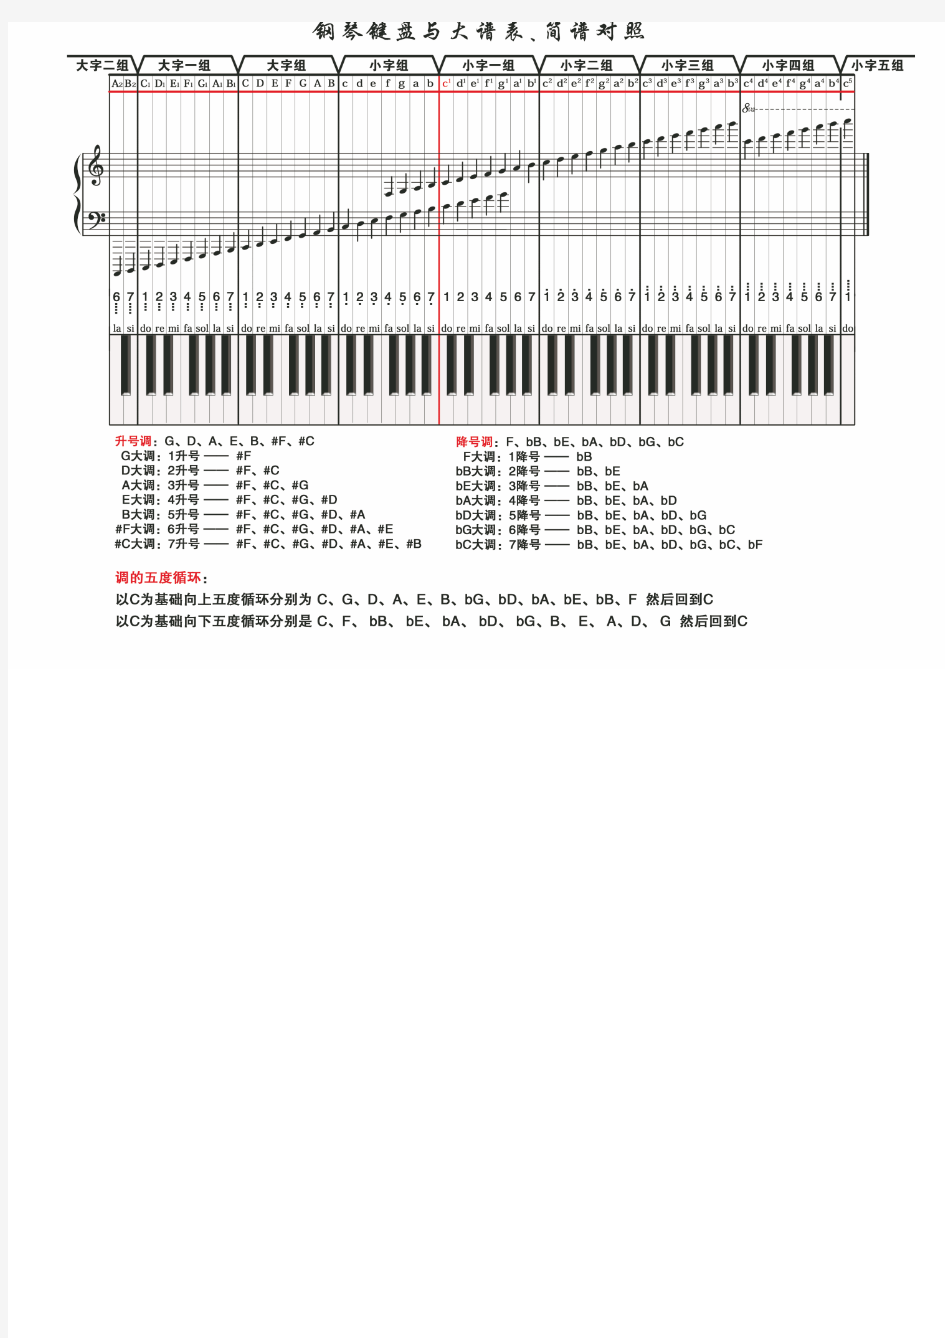 超清晰钢琴键盘与大谱表、简谱对照